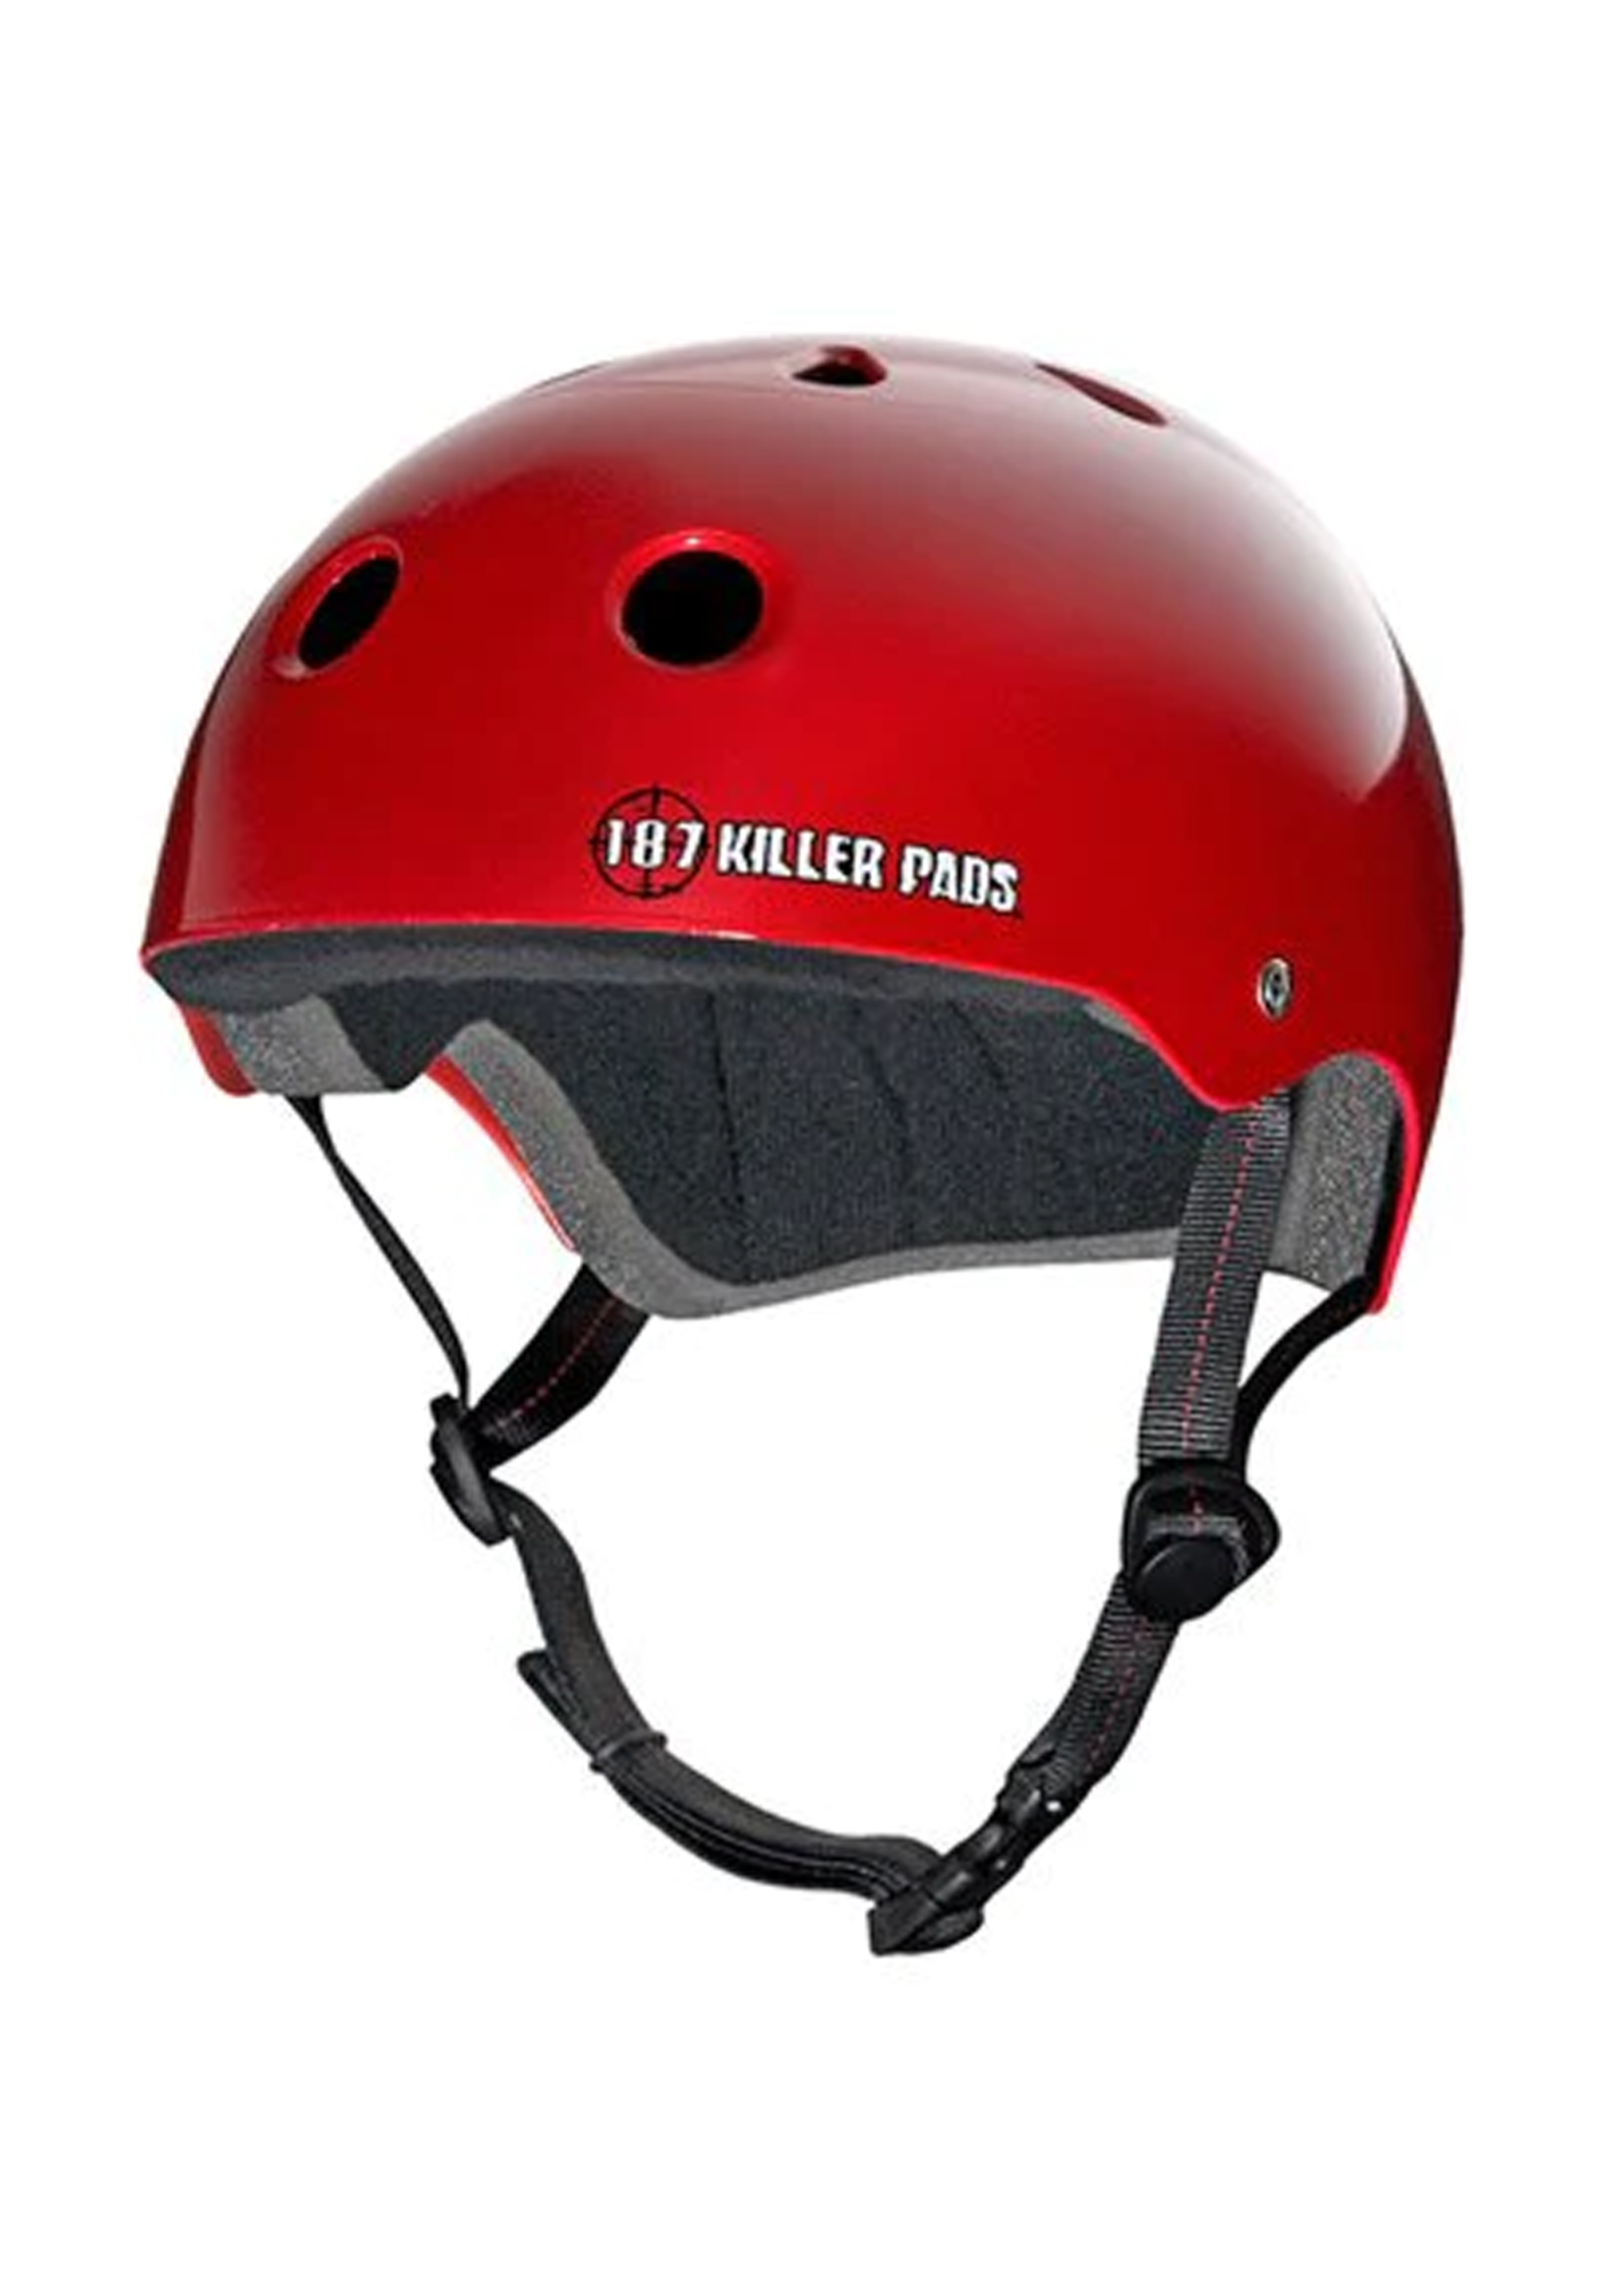 187 KILLER PADS 187 KILLER PADS - Skate Helmet Red Gloss - SMALL